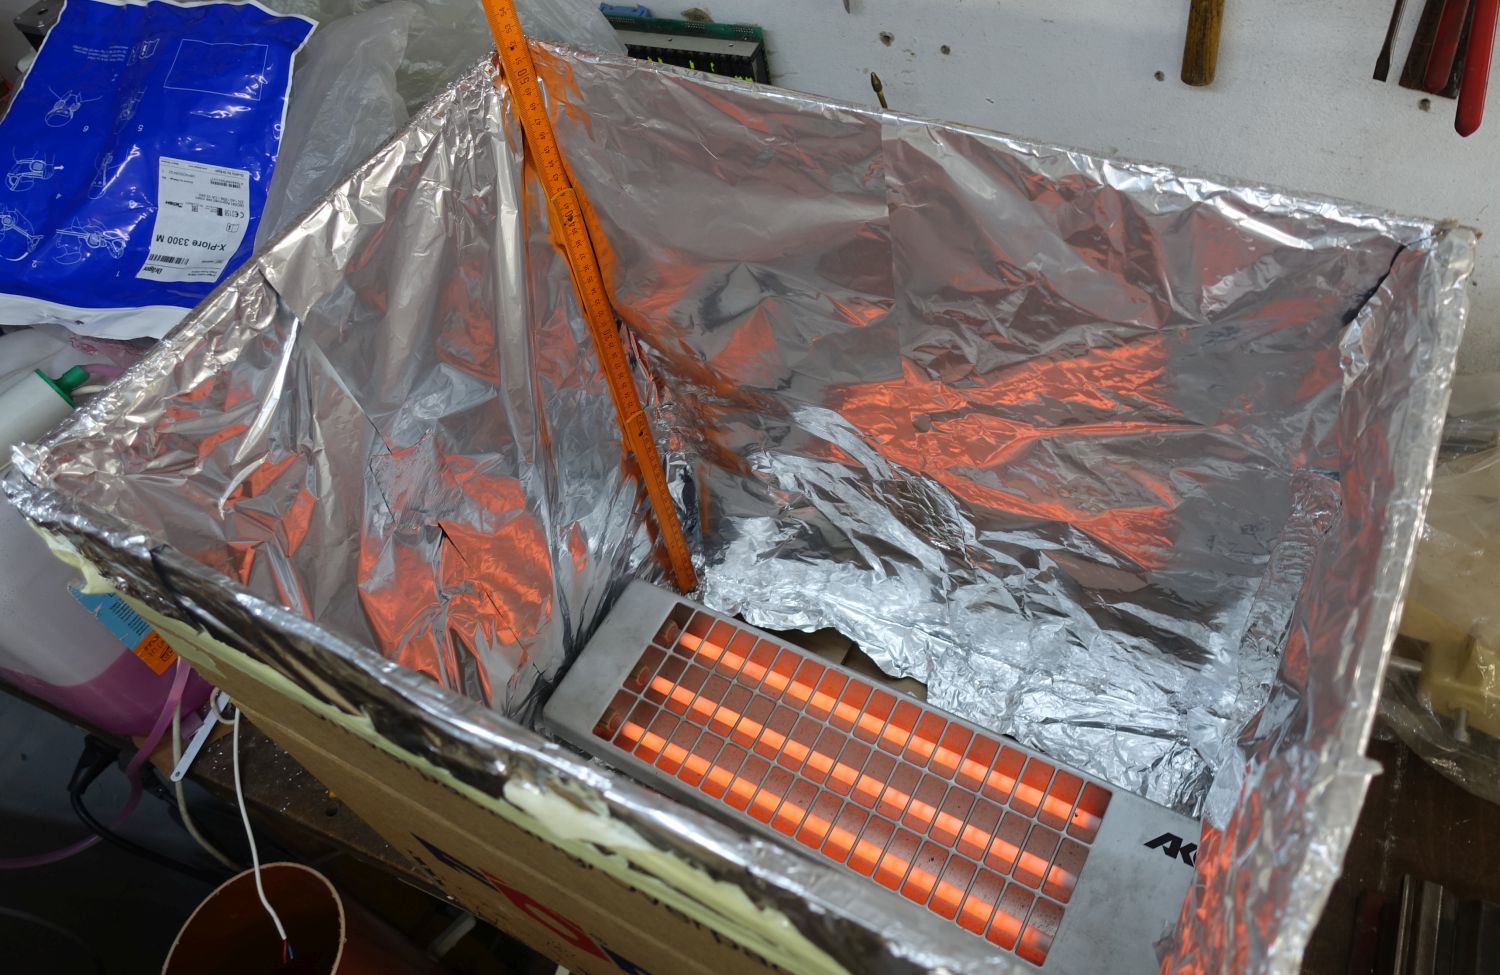 1800 Watt Quarzstrahler in mit Alufolie ausgeschlagenem Pappkarton, 2022-08-08